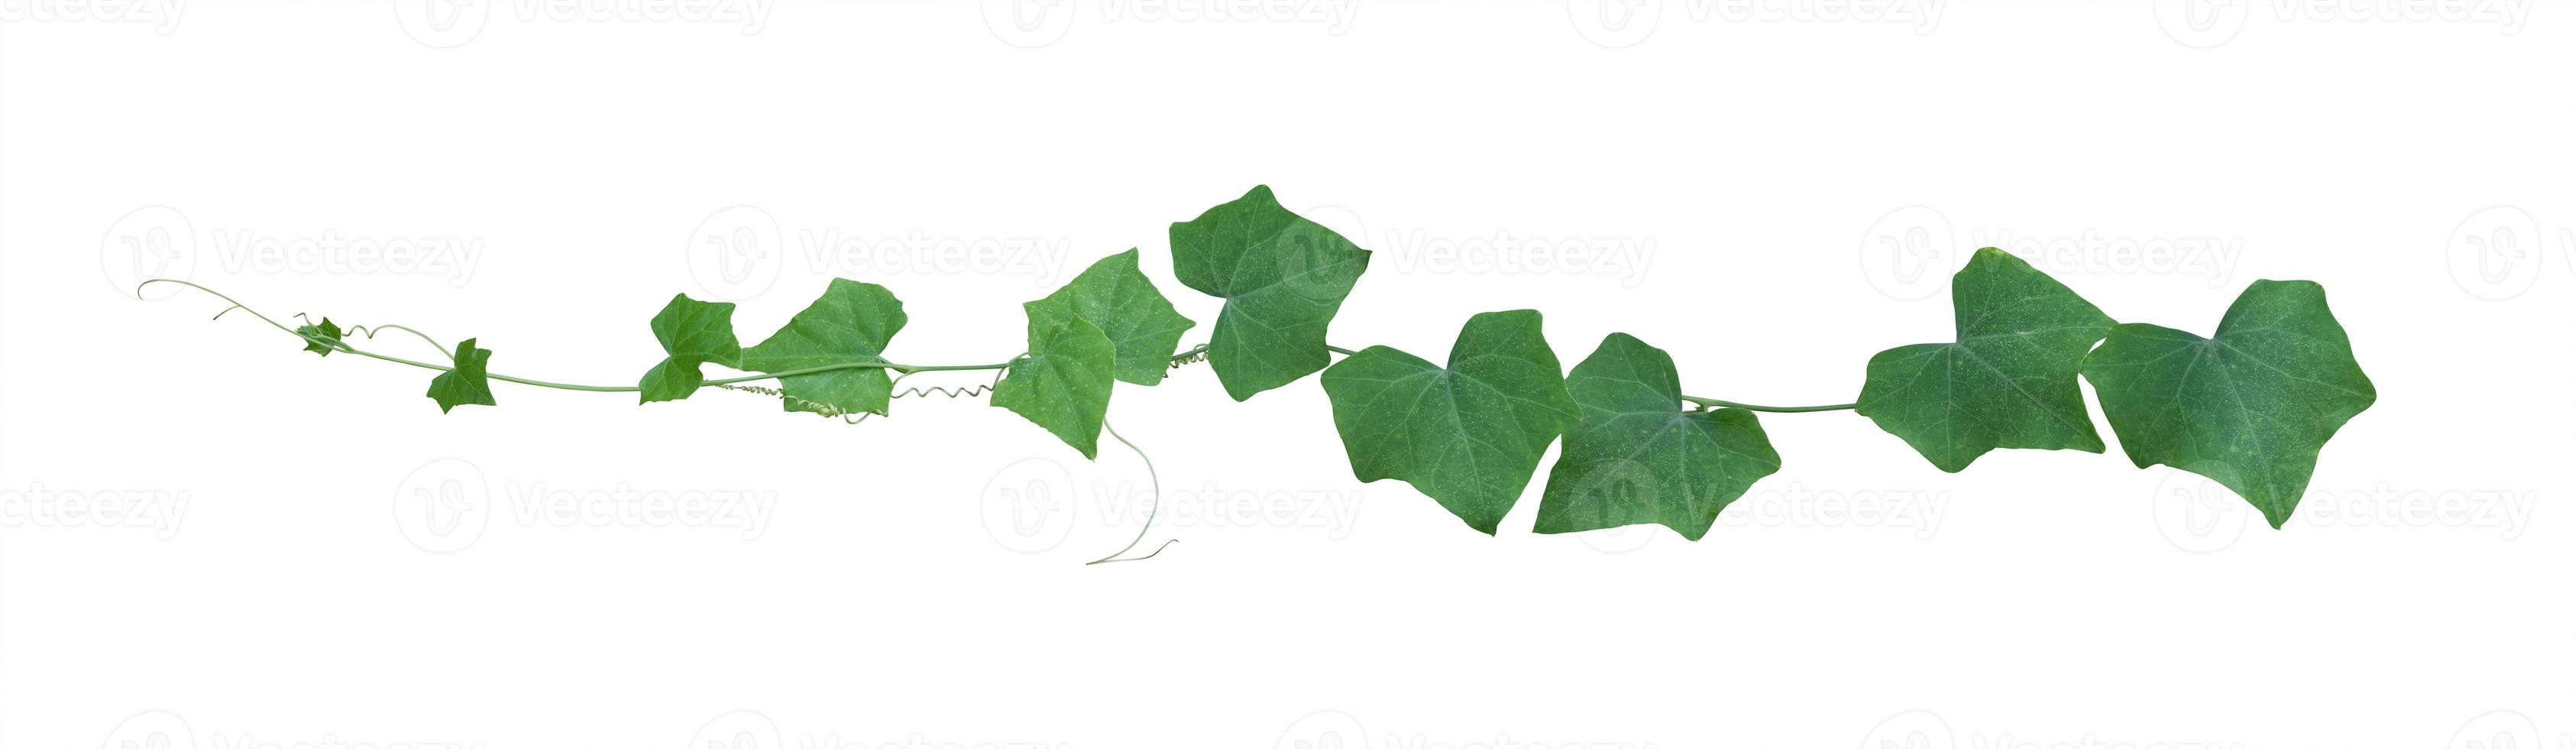 feuilles de vigne, plante de lierre isolée sur fond blanc, chemin de détourage photo